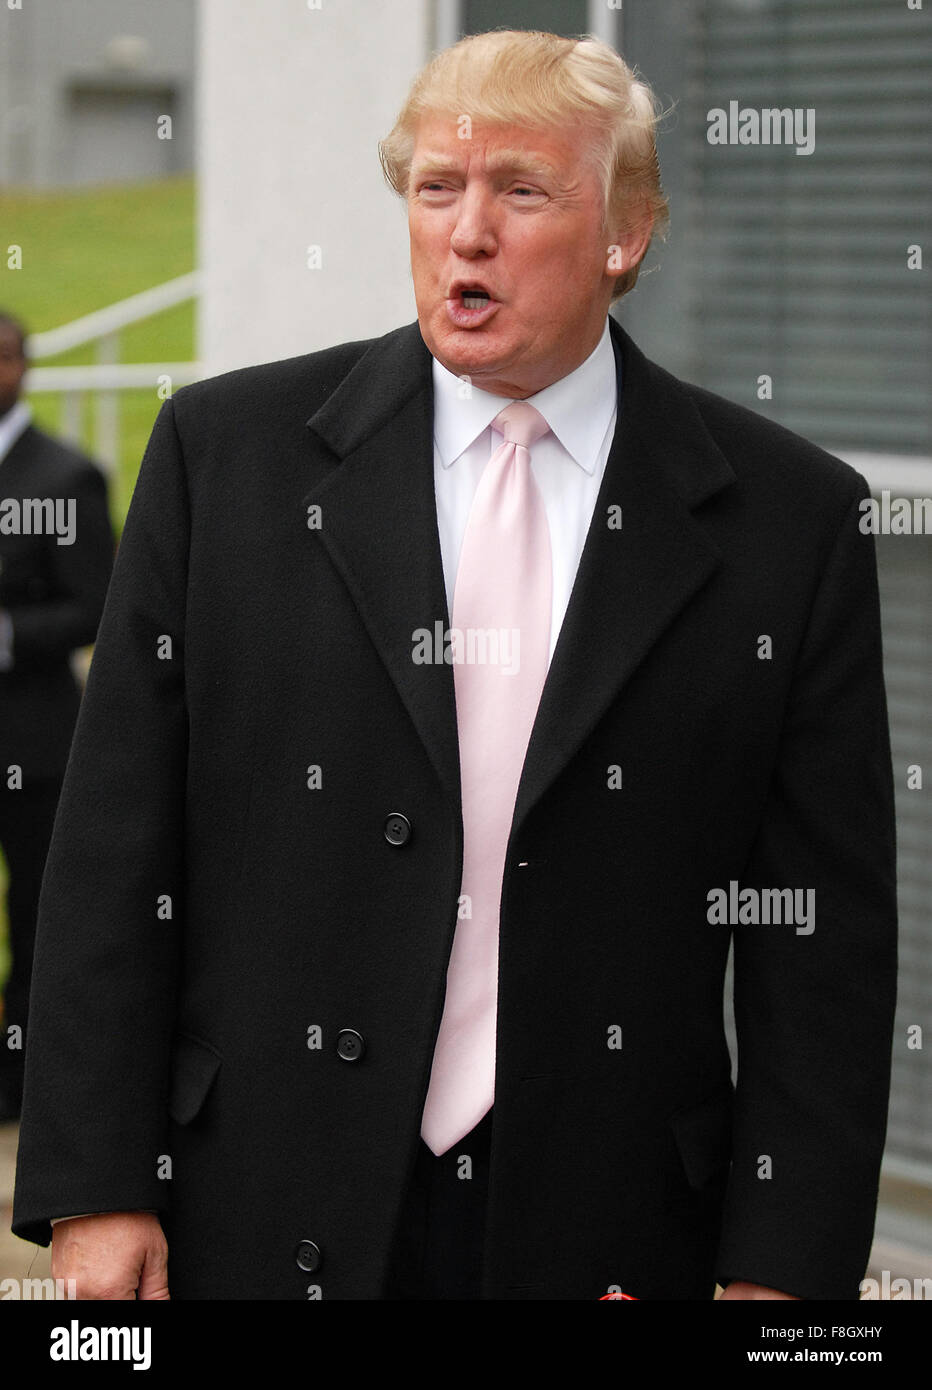 Donald Trump empfangen Ehrengrad in Aberdeen, Schottland. Stockfoto